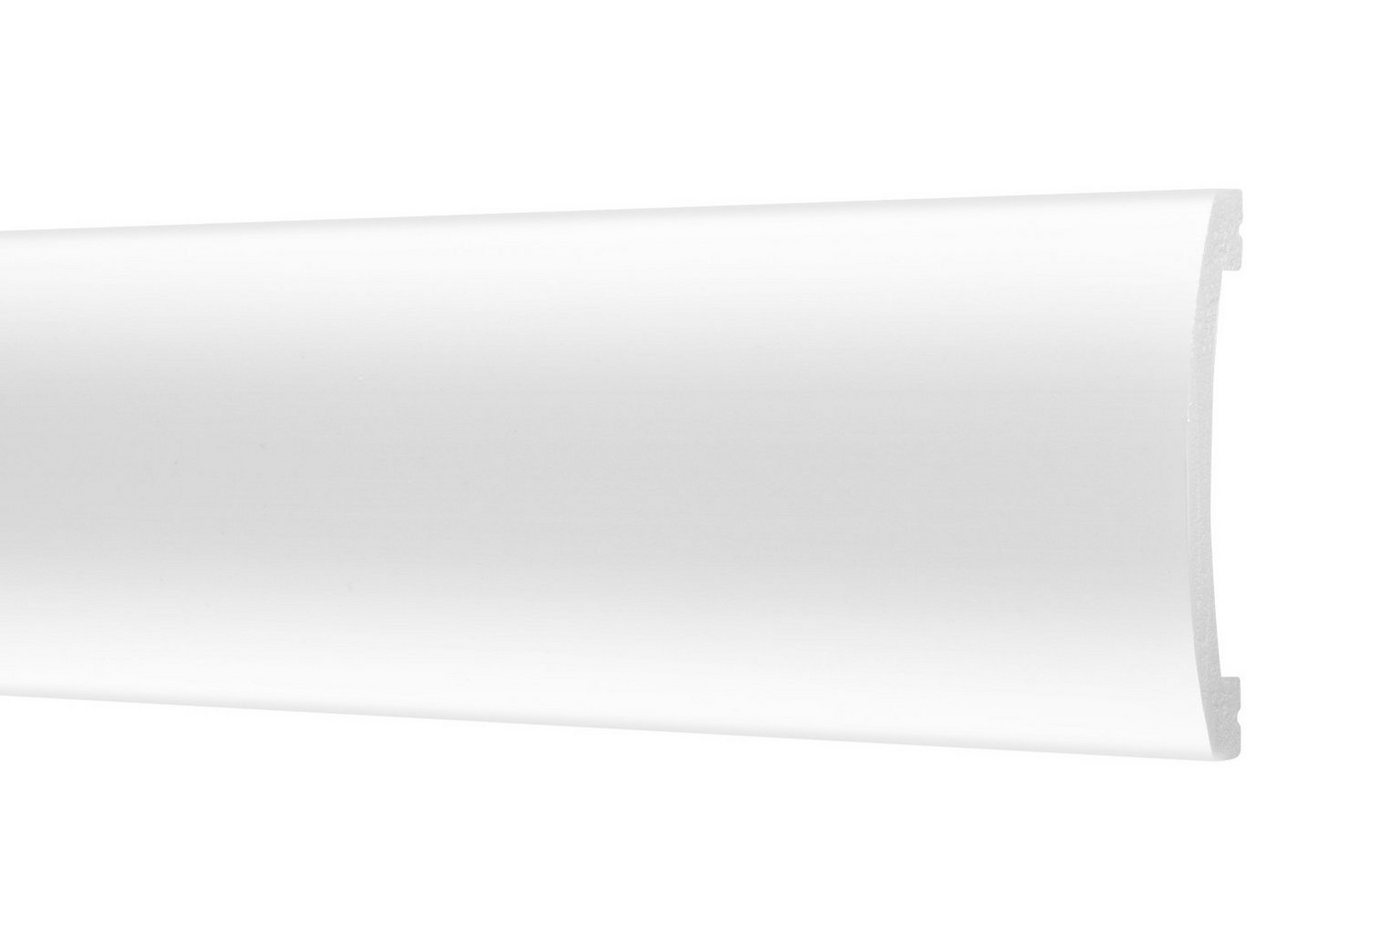 Cosca Zierleiste CM5, 2 Meter / 1 Leiste, Wandleisten aus Ecopolymer - Stuckleisten hochdichtes Styropor, extrem widerstandsfähig - (2 Meter / 1 Leiste) Zierprofile Friesprofile Stuckprofile von Cosca